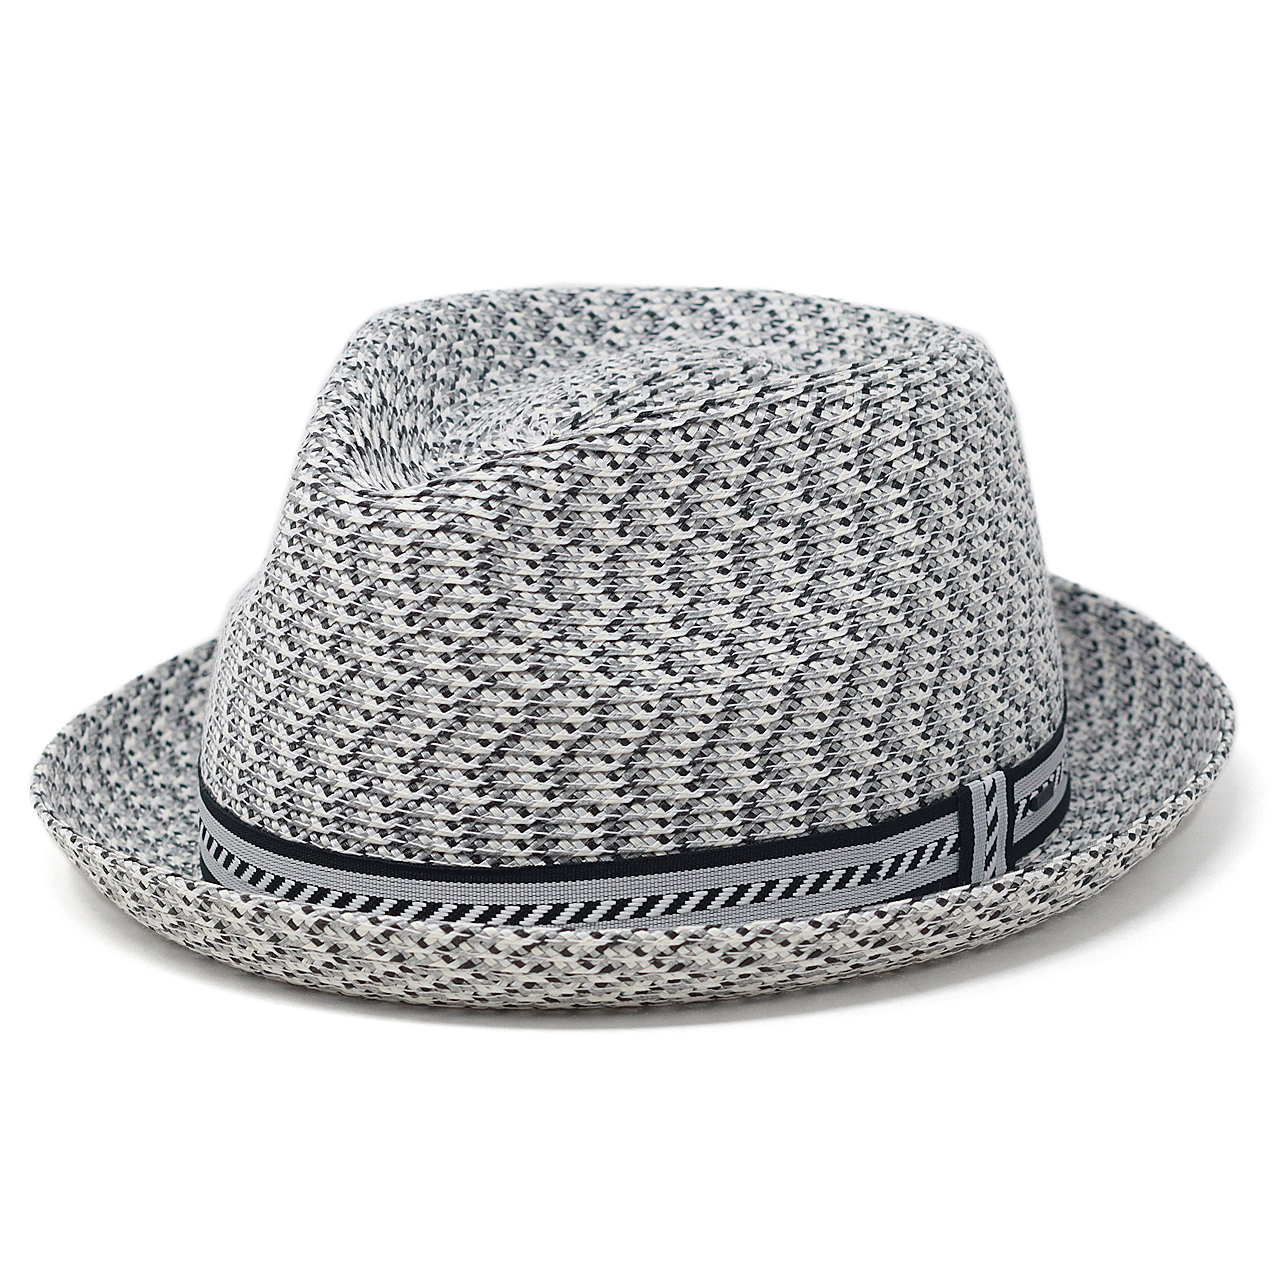 ブランド ハット Bailey 中折れハット ベイリー ブレードハット hat 海外ブランド 夏の帽子 ストローハット メンズ 帽子 